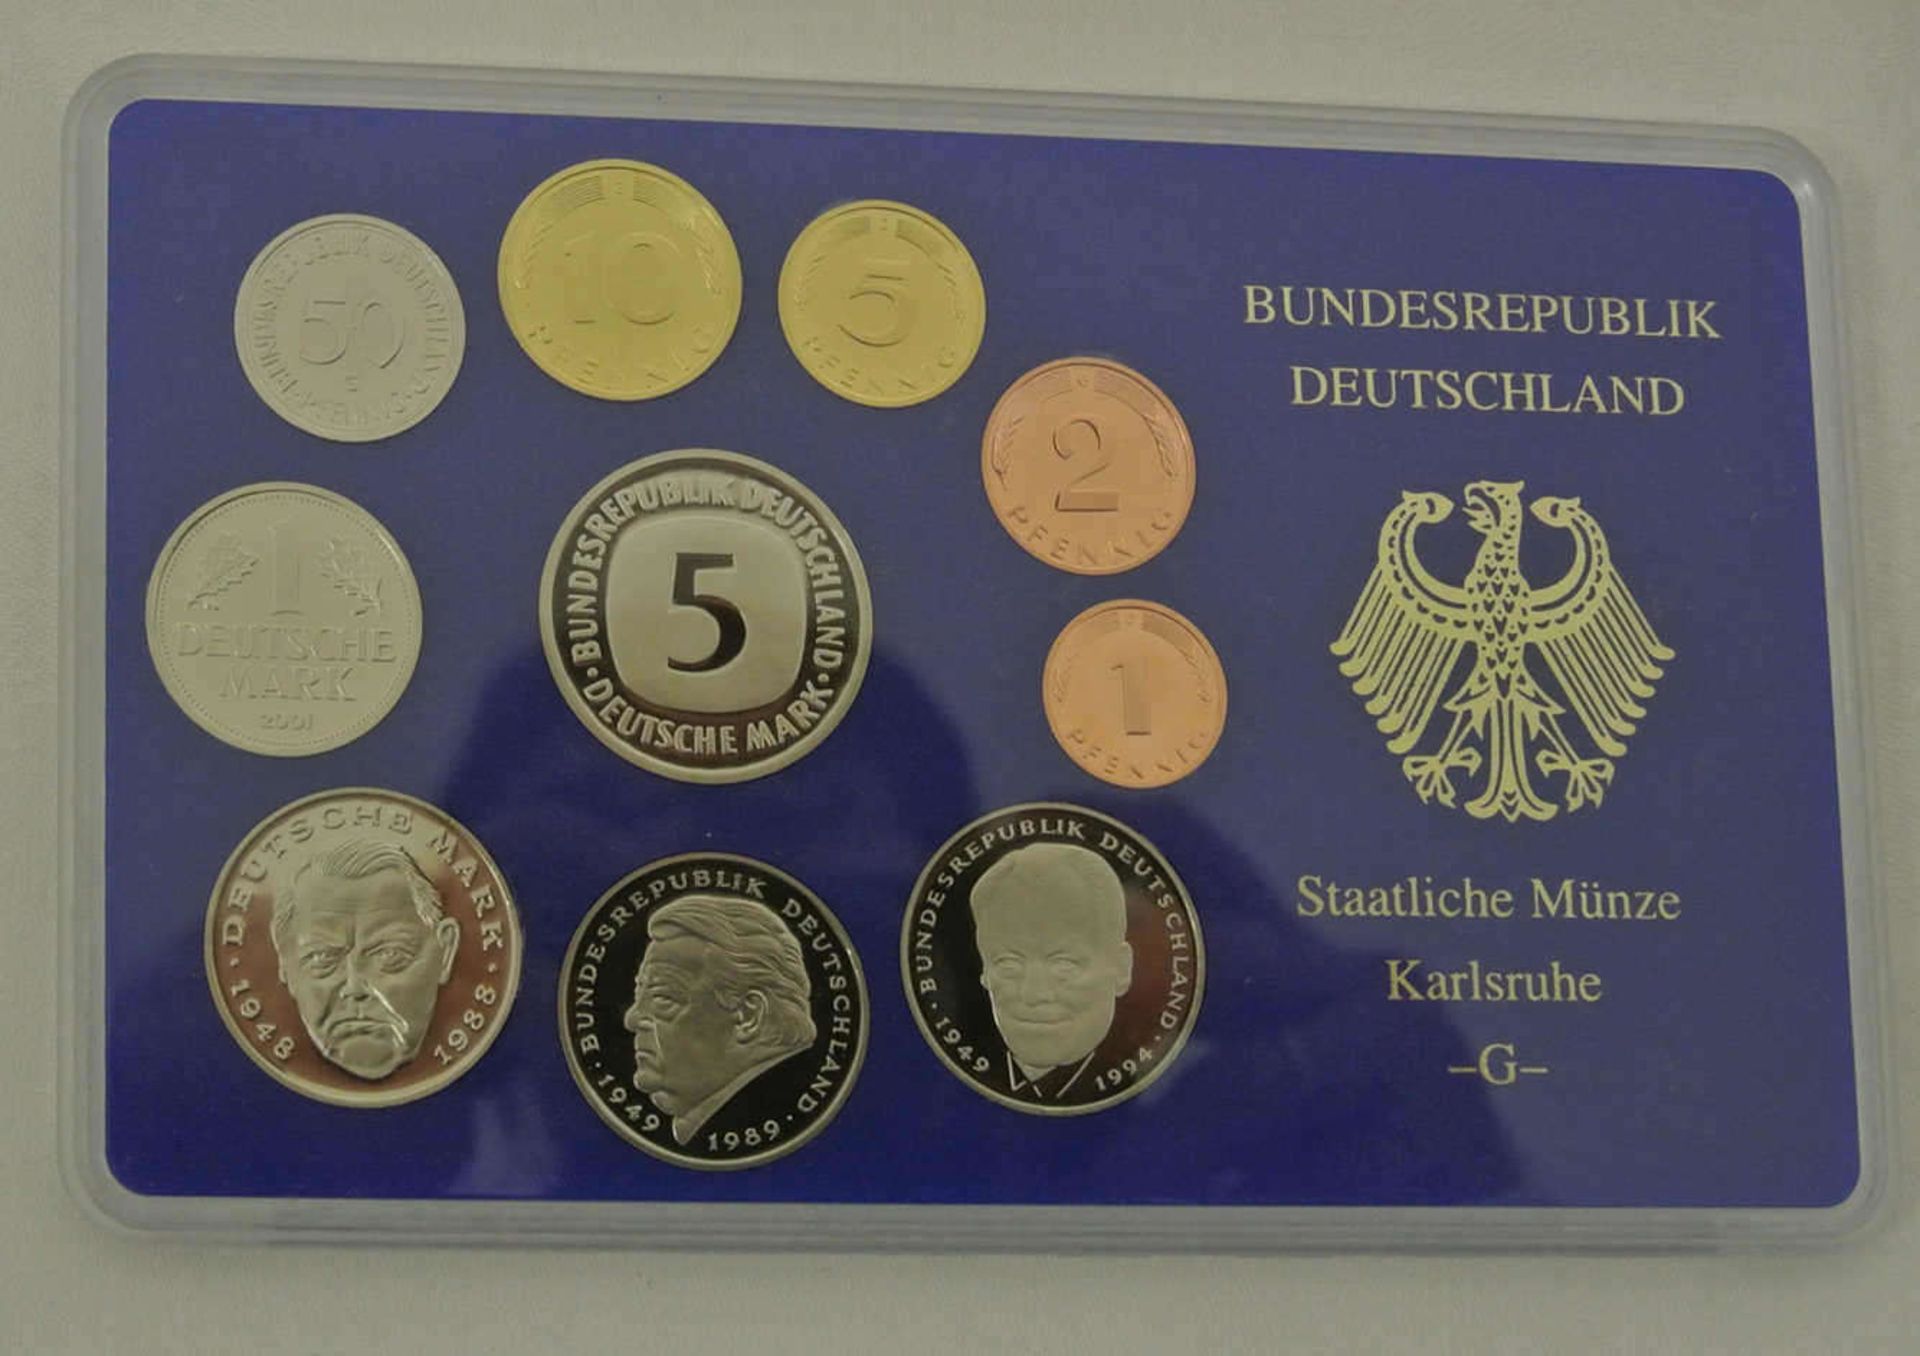 BRD Kursmünzsätze, 2001 A-J, in polierter Platte. 1 Pfennig - 5 DM BRD course coin sets, 2001 A-J, - Bild 2 aus 2